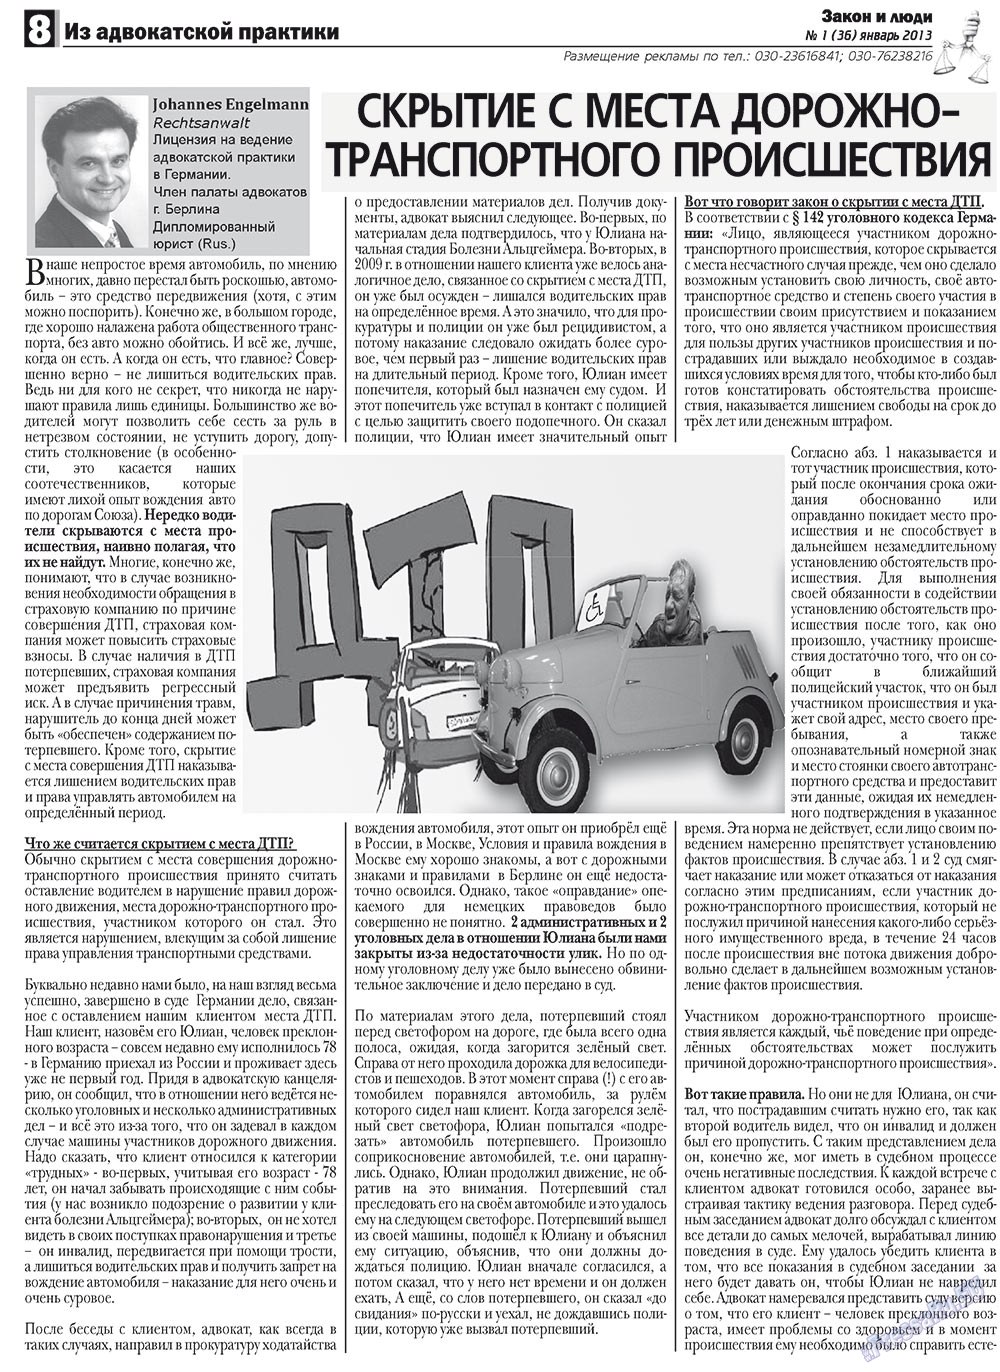 Закон и люди, газета. 2013 №1 стр.8